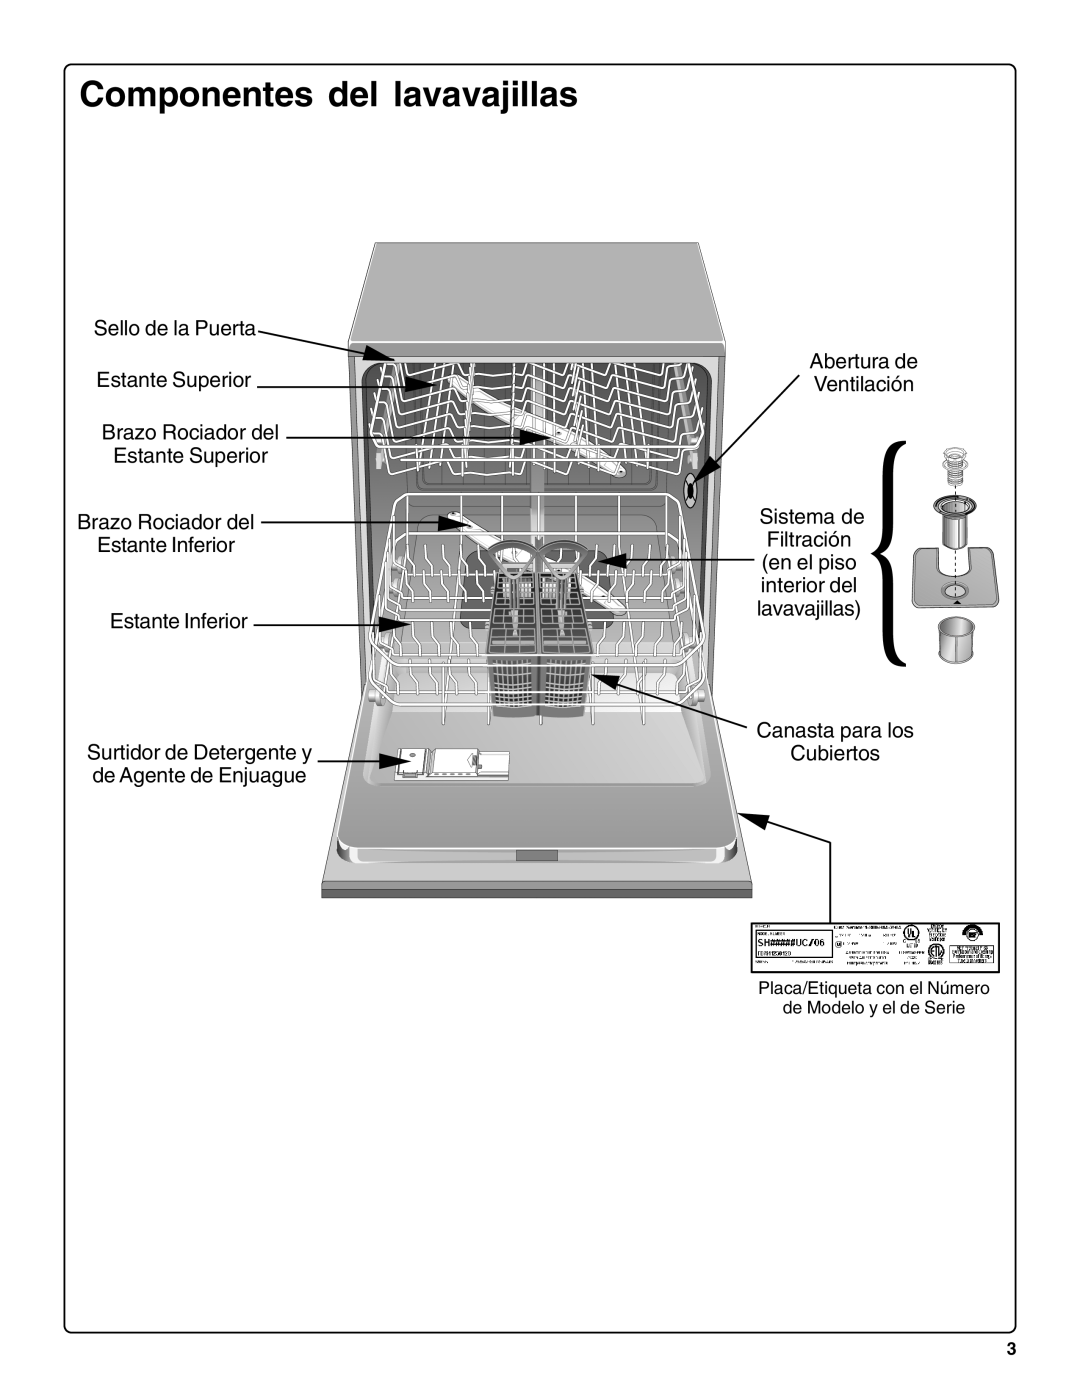 Bosch Appliances SHE66C Componentes del lavavajillas, Sello de la Puerta Estante Superior, Estante Inferior 